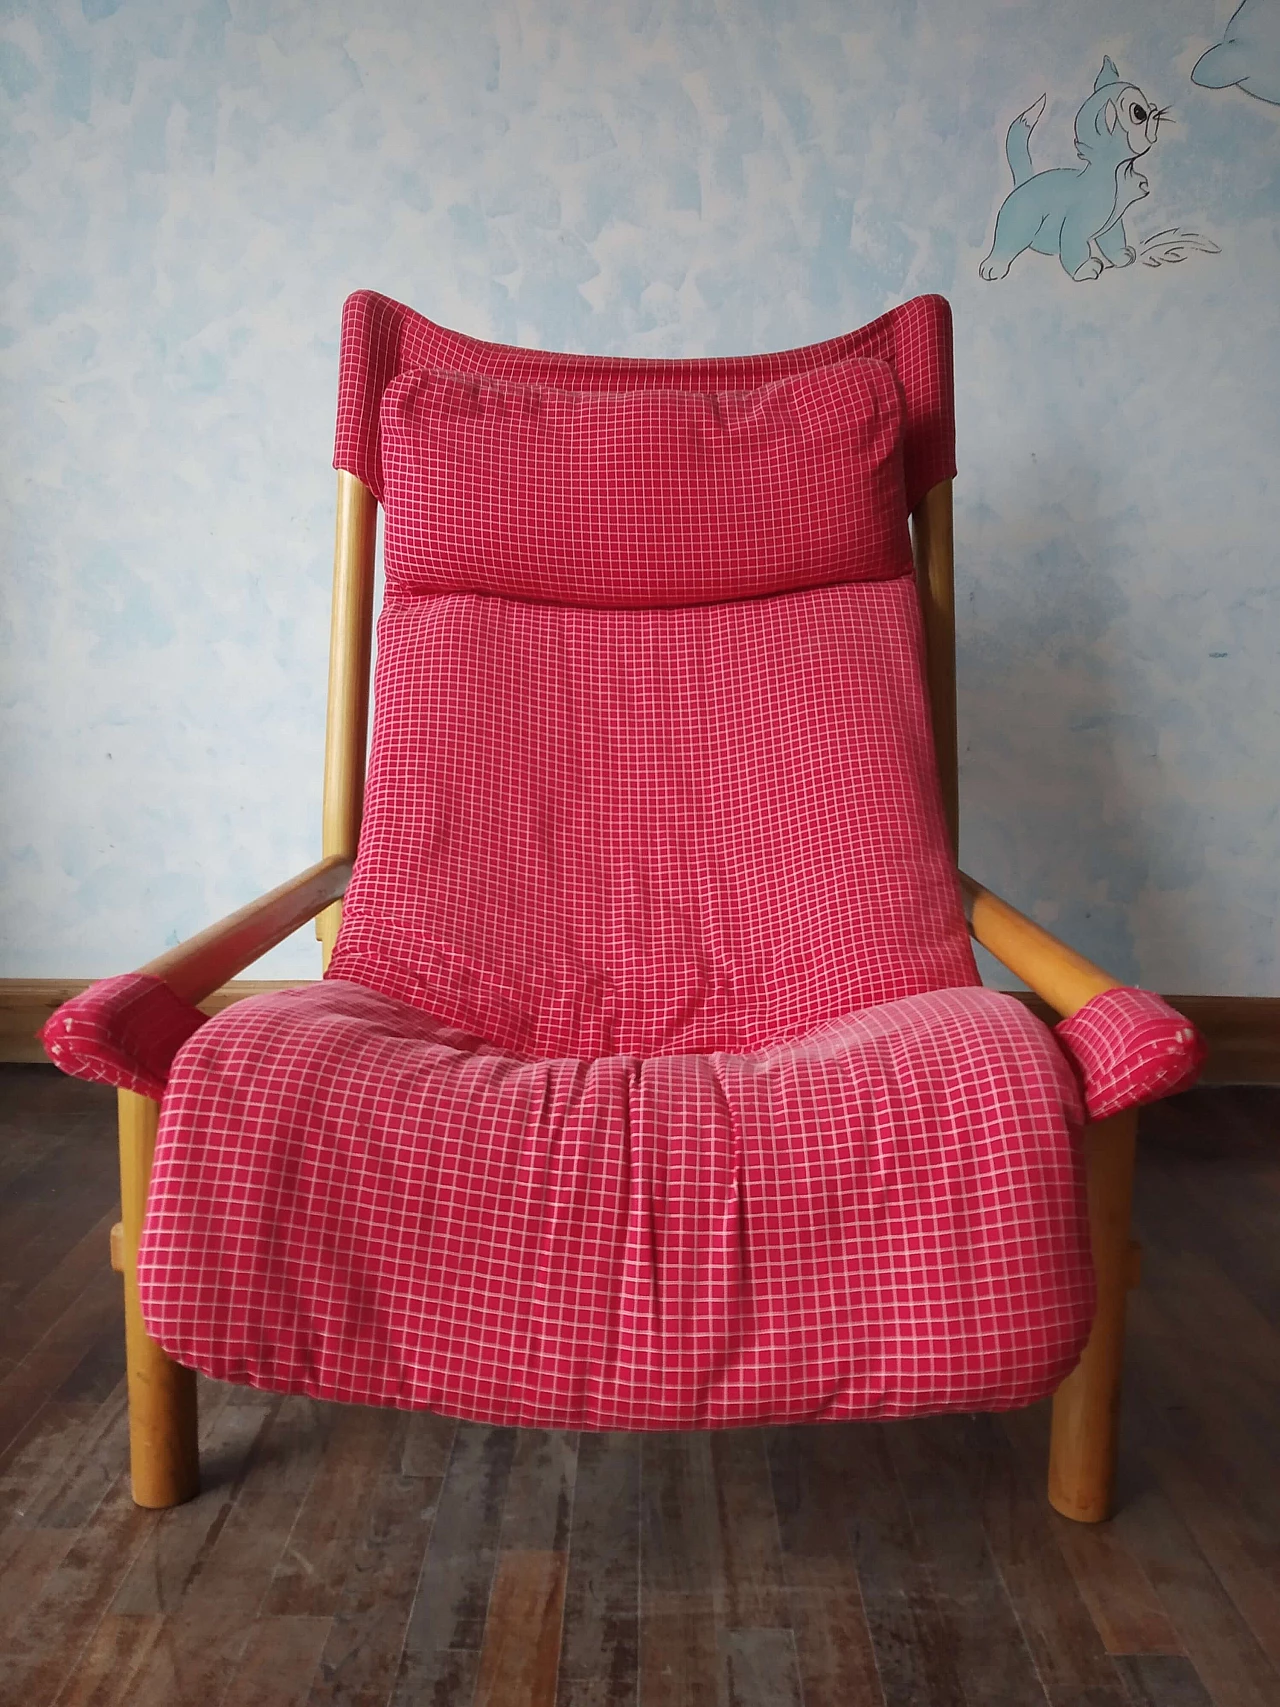 Carmina armchair by Carlo Santi for Arflex, 1970s 1468656